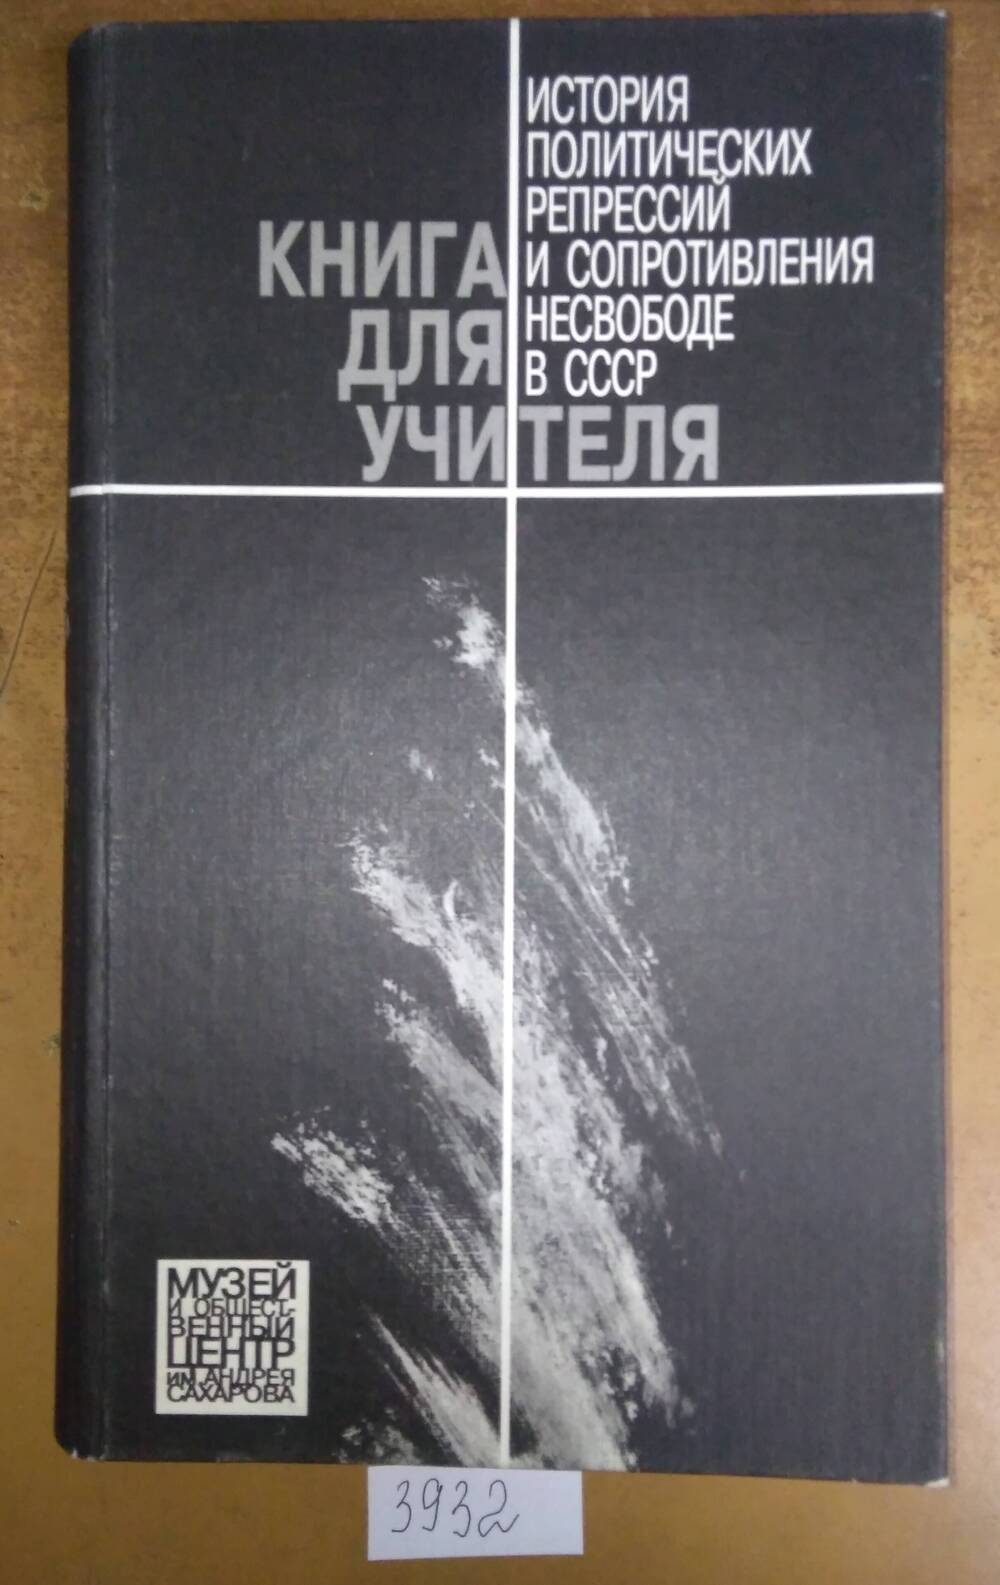 Книга печатная. История политических репрессий и сопротивления несвободе в СССР.